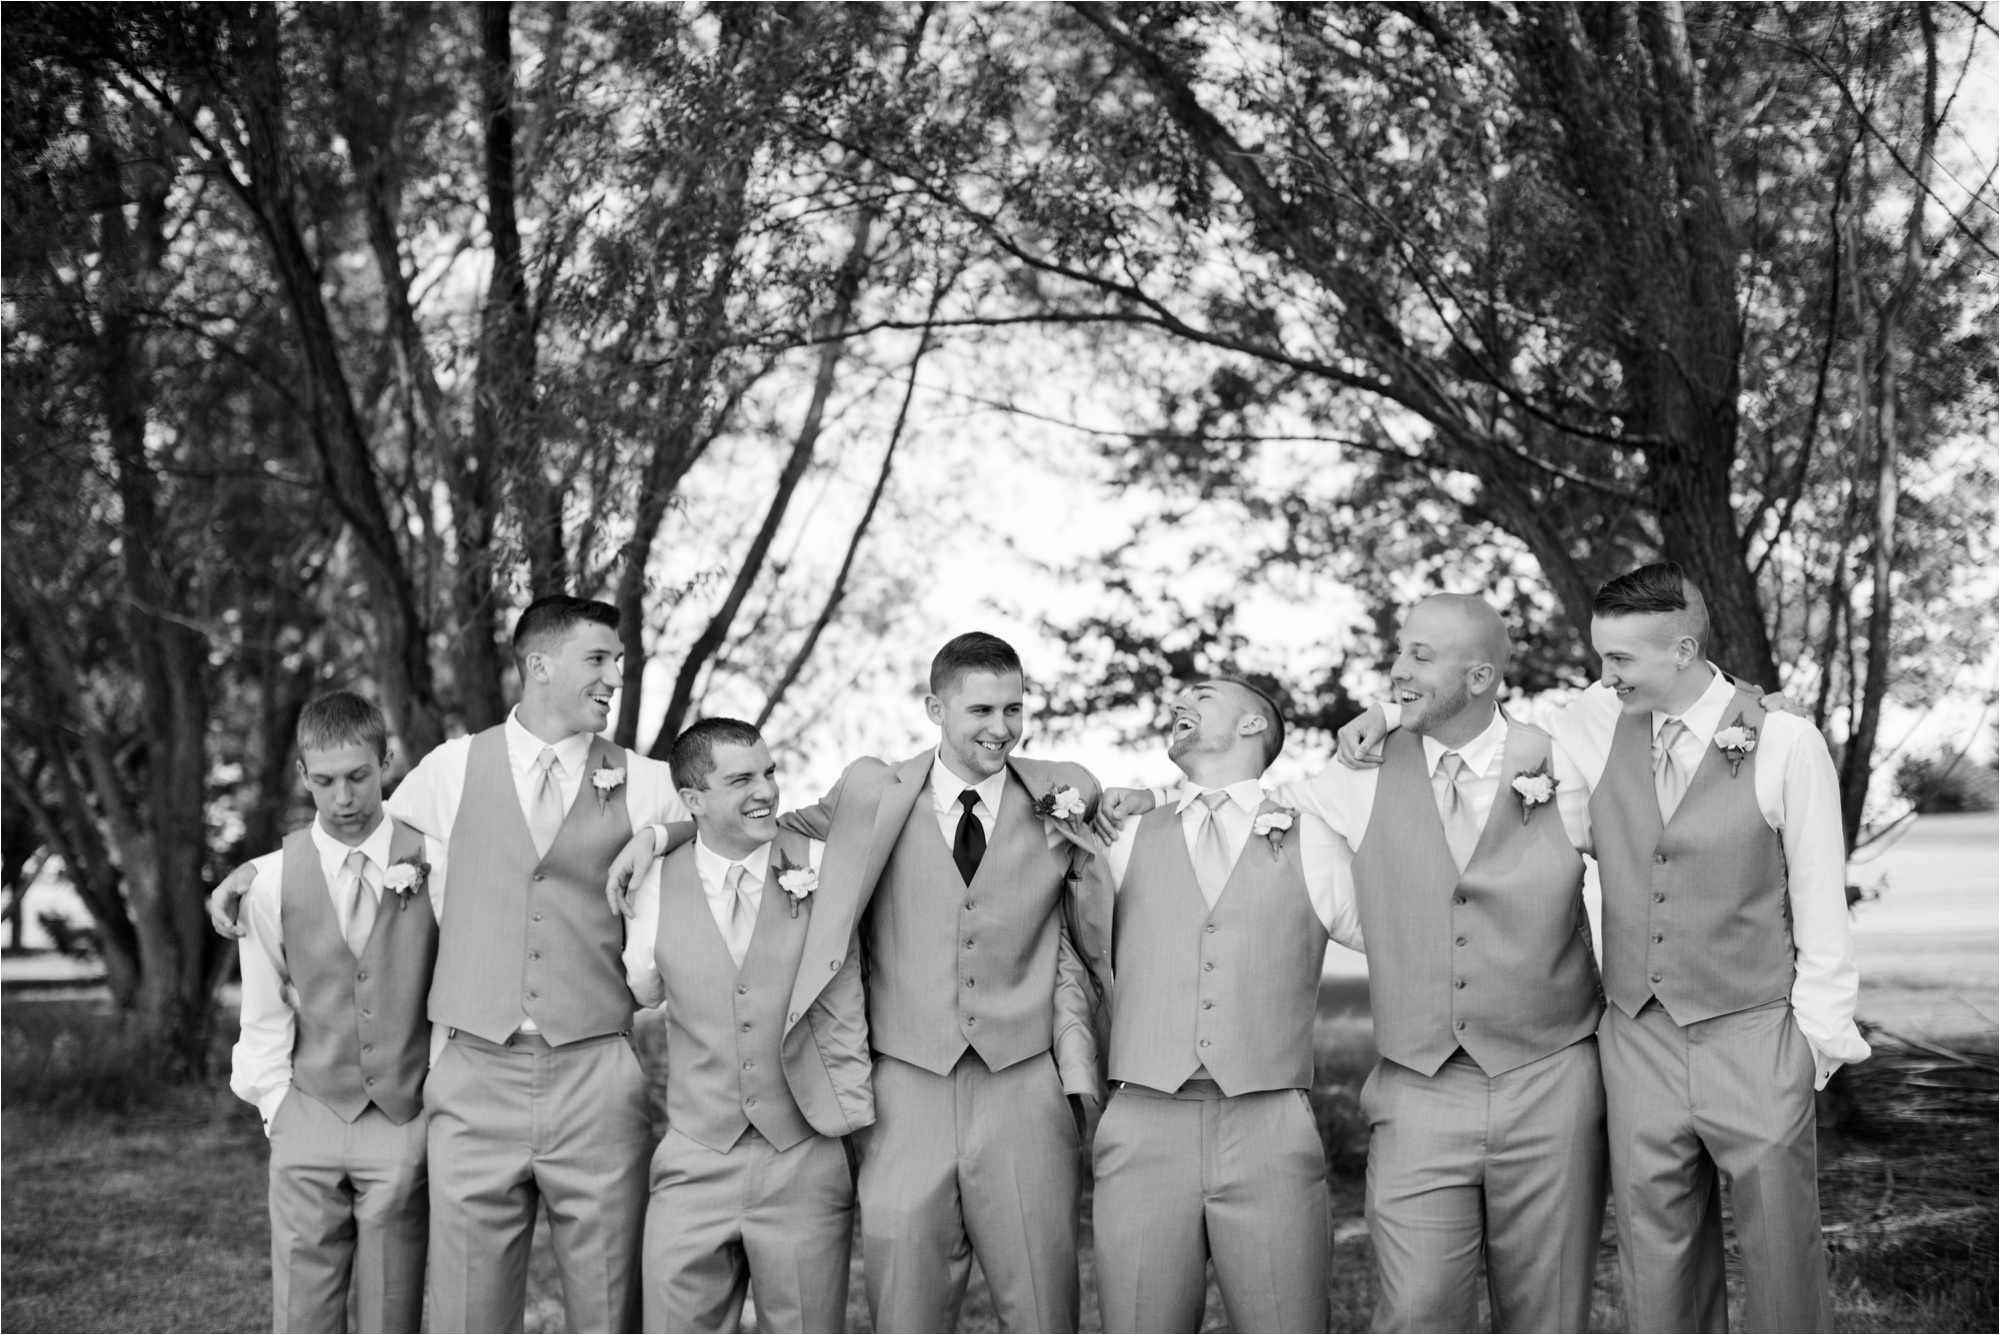 Caitlin and Luke Photography, Bloomington Normal Wedding Photographers, Illinois Wedding Photographers, Illinois Husband and Wife Wedding Photography Team_0299.jpg